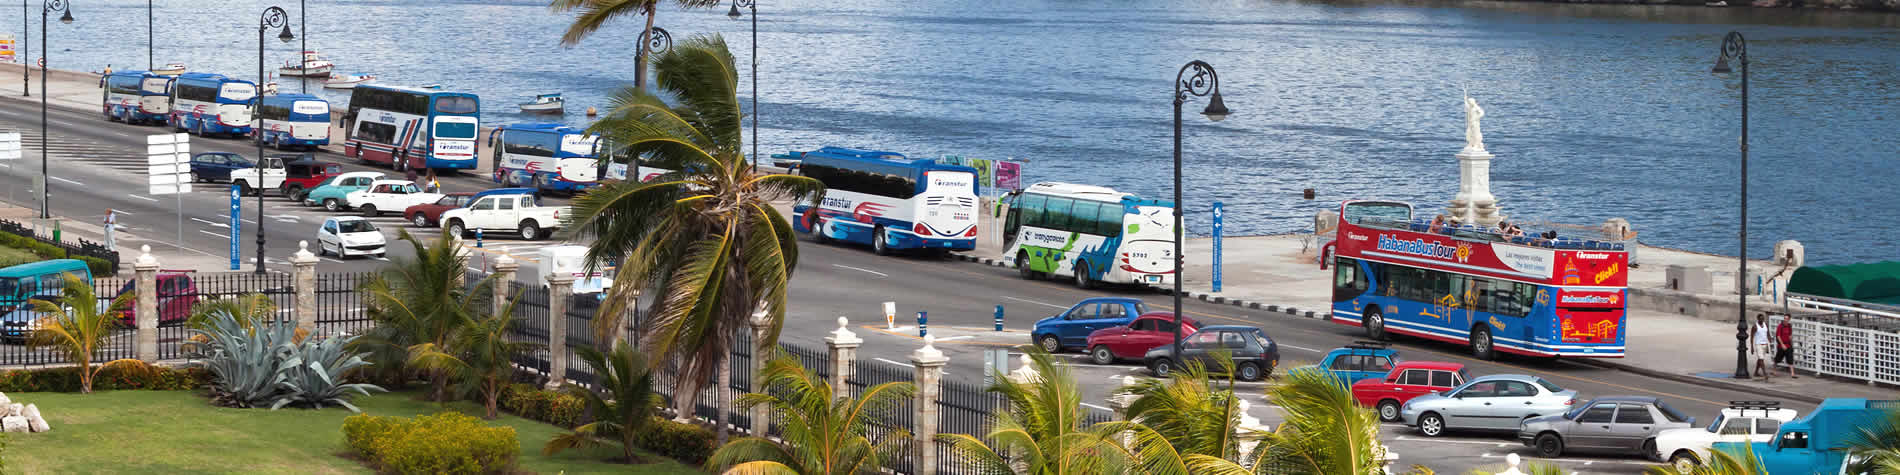 Vista de autobuses de traslados en La Habana